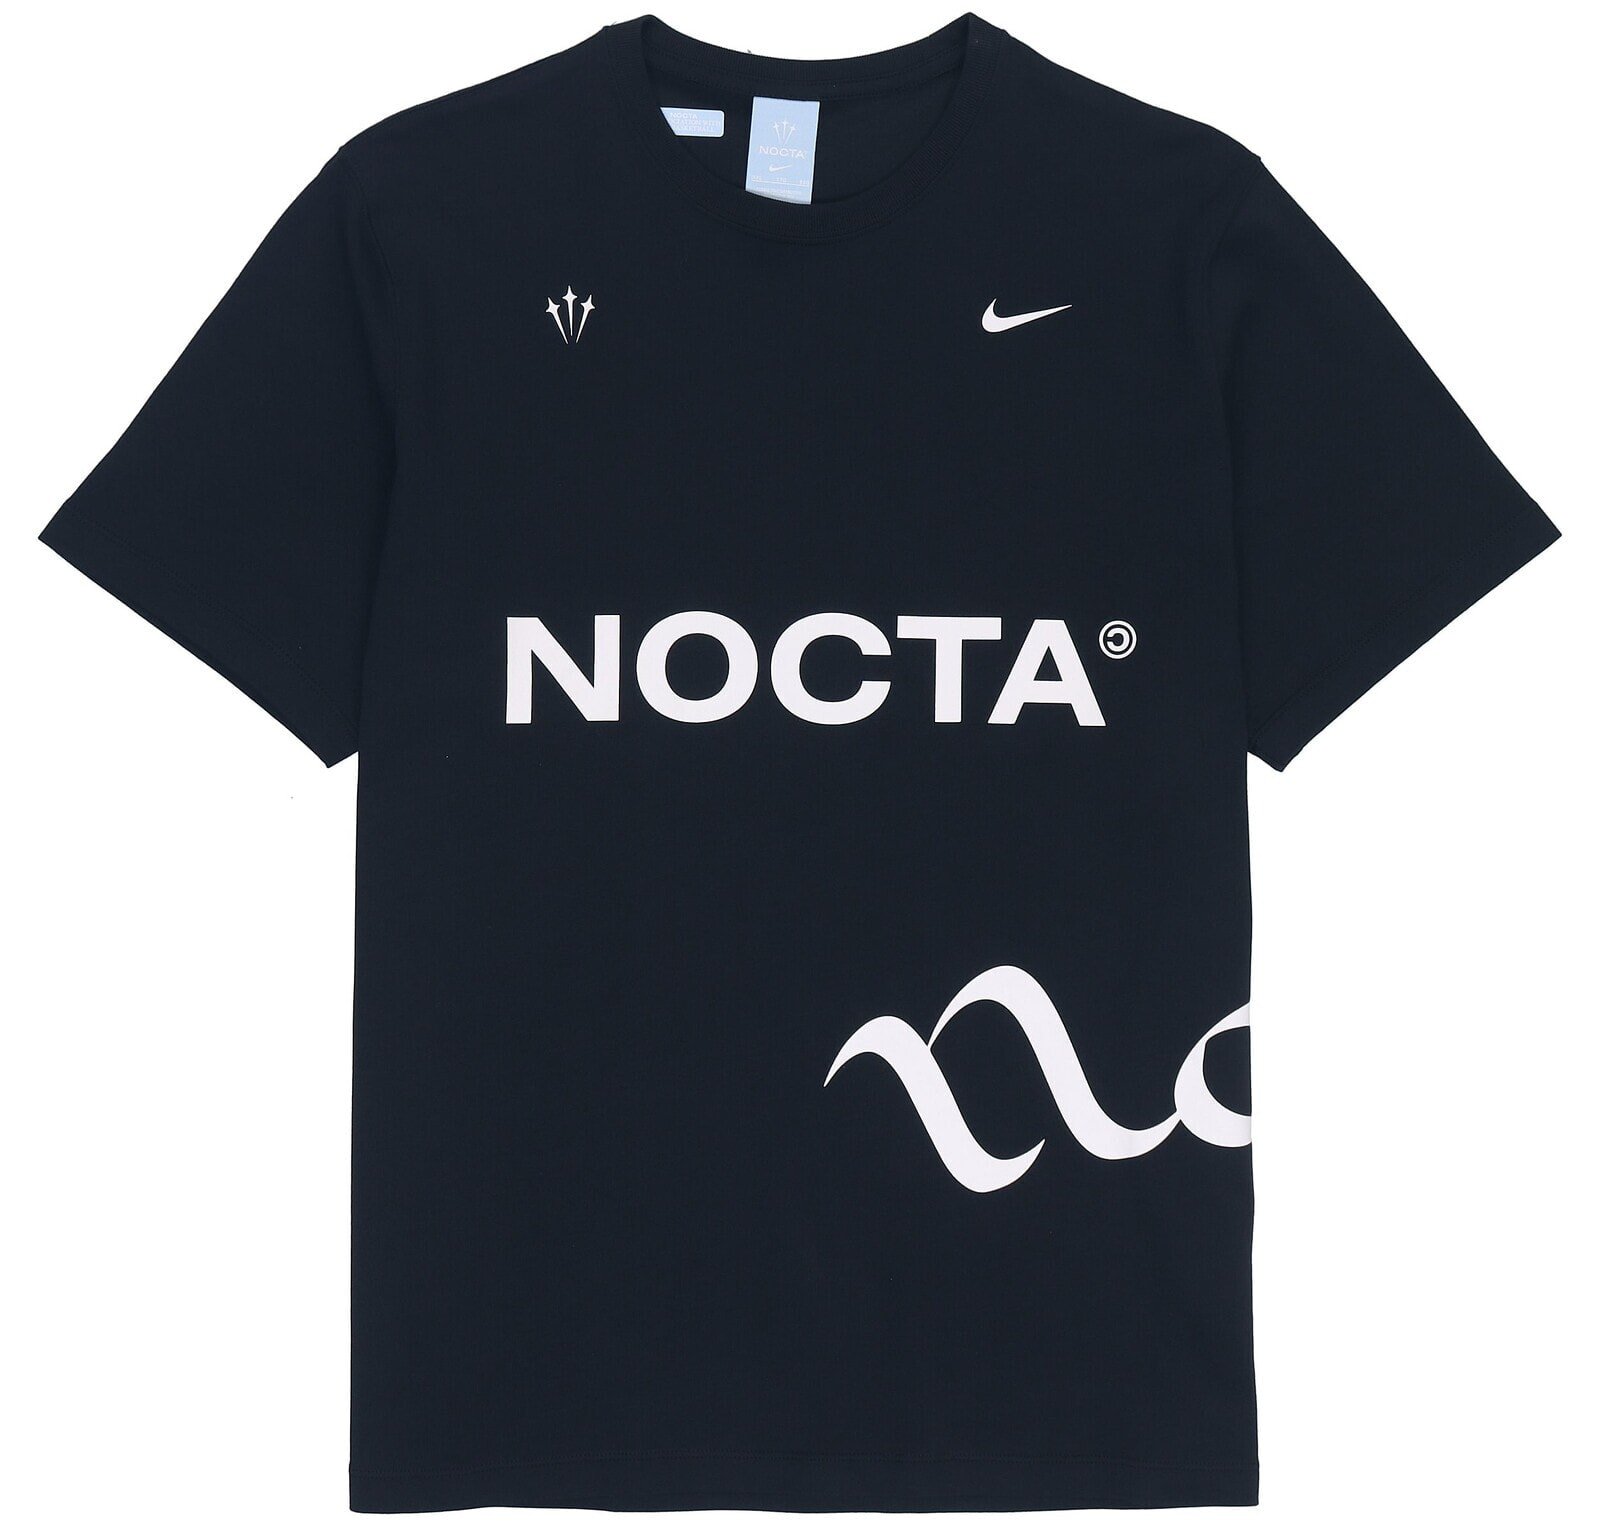 Nike x Drake 联名款 NOCTA系列 撞色Logo字母印花休闲套头短袖T恤 男款 黑色 / Футболка Nike x Drake NOCTA LogoT DM1727-010